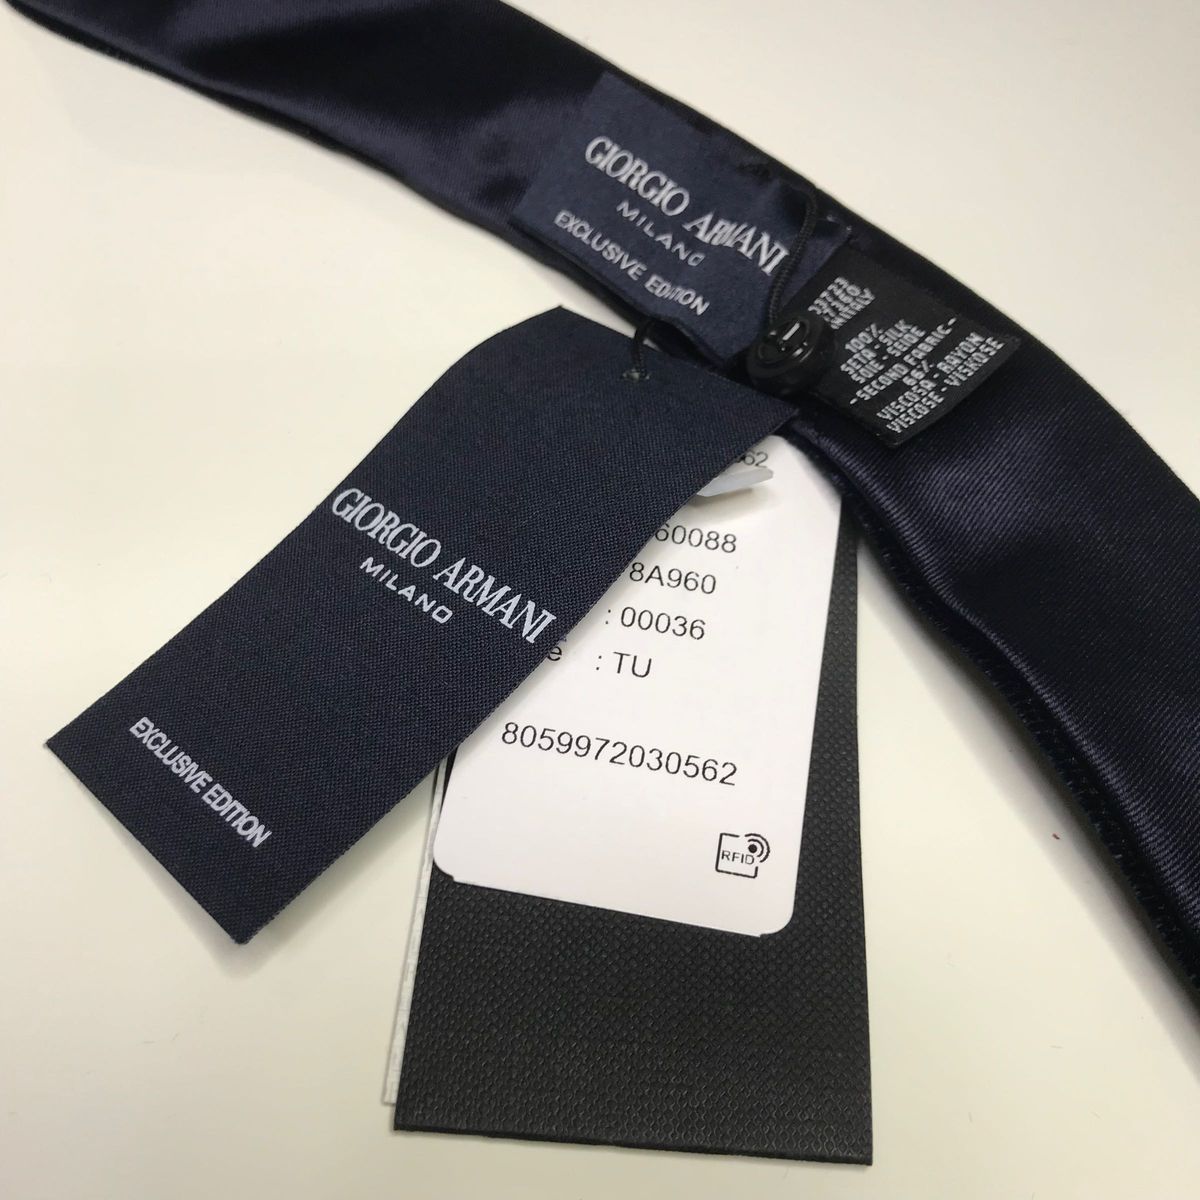 【新品未使用】ジョルジオアルマーニ イタリア製 限定品ネクタイ ブラック